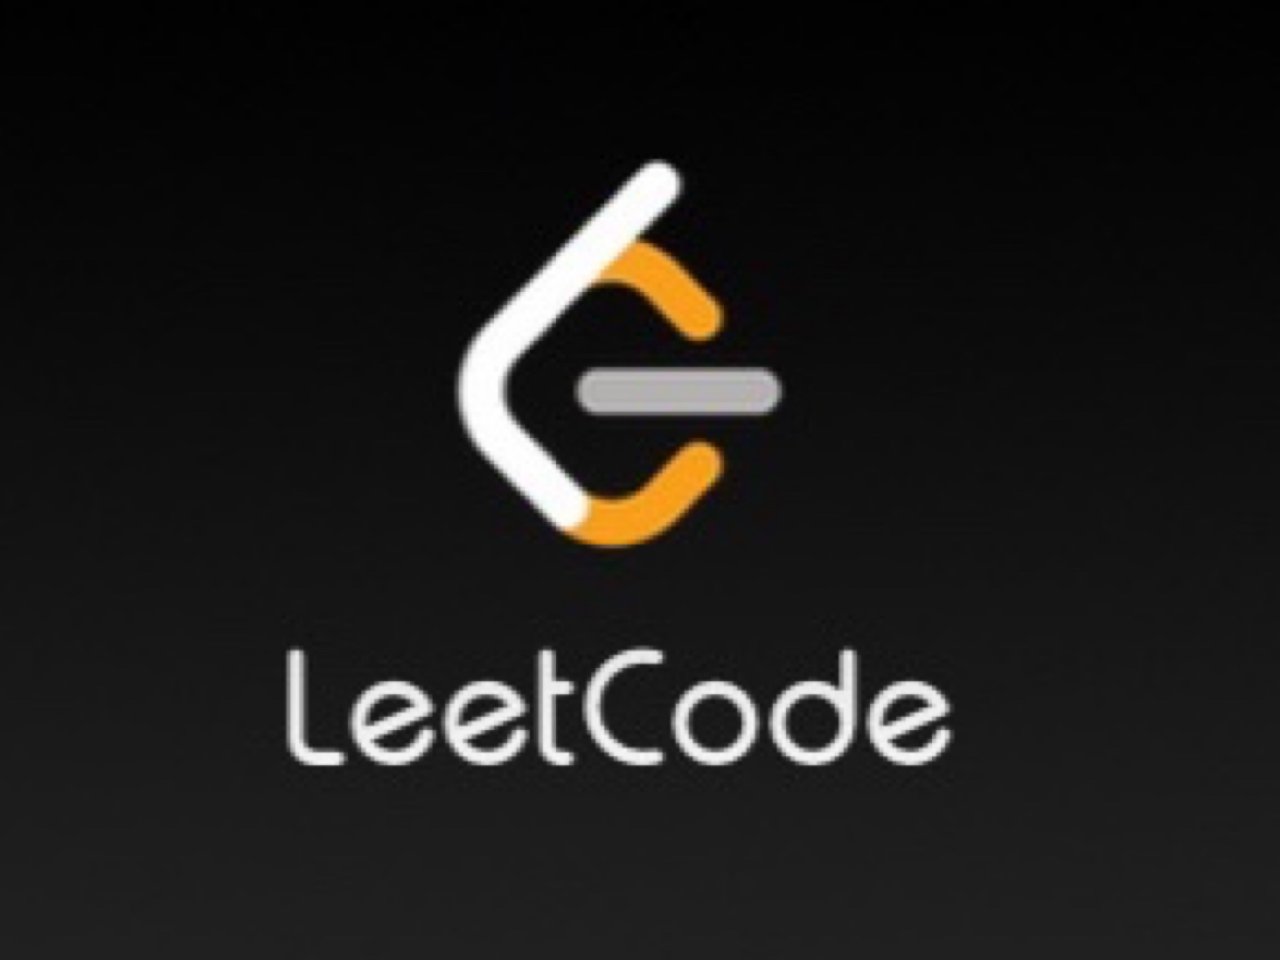 Leetcode 年度会员折扣回归...